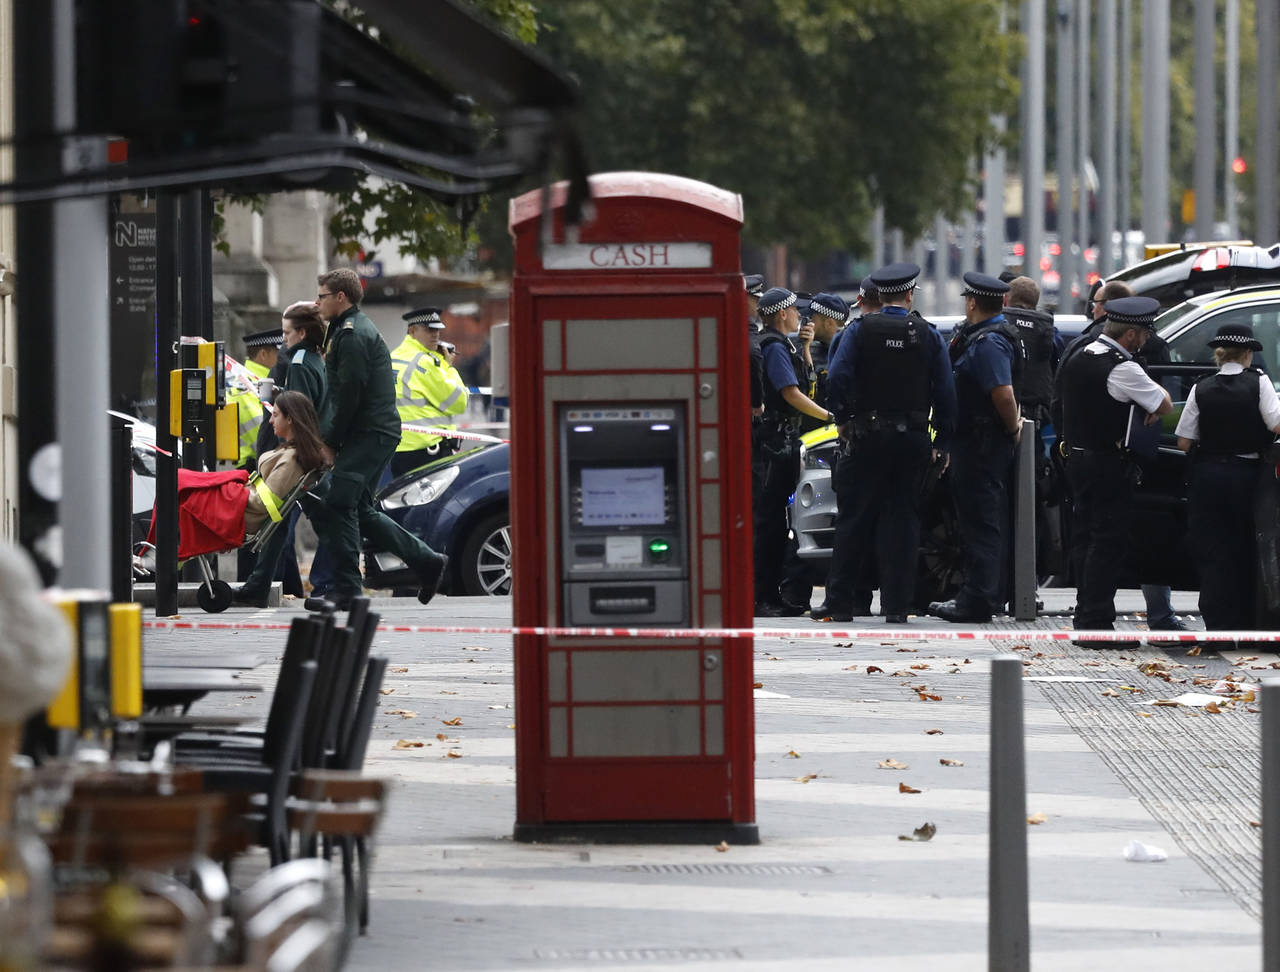 Caos. Un total de 11 personas resultaron heridas luego de que un automóvil las arrolló en Londres.